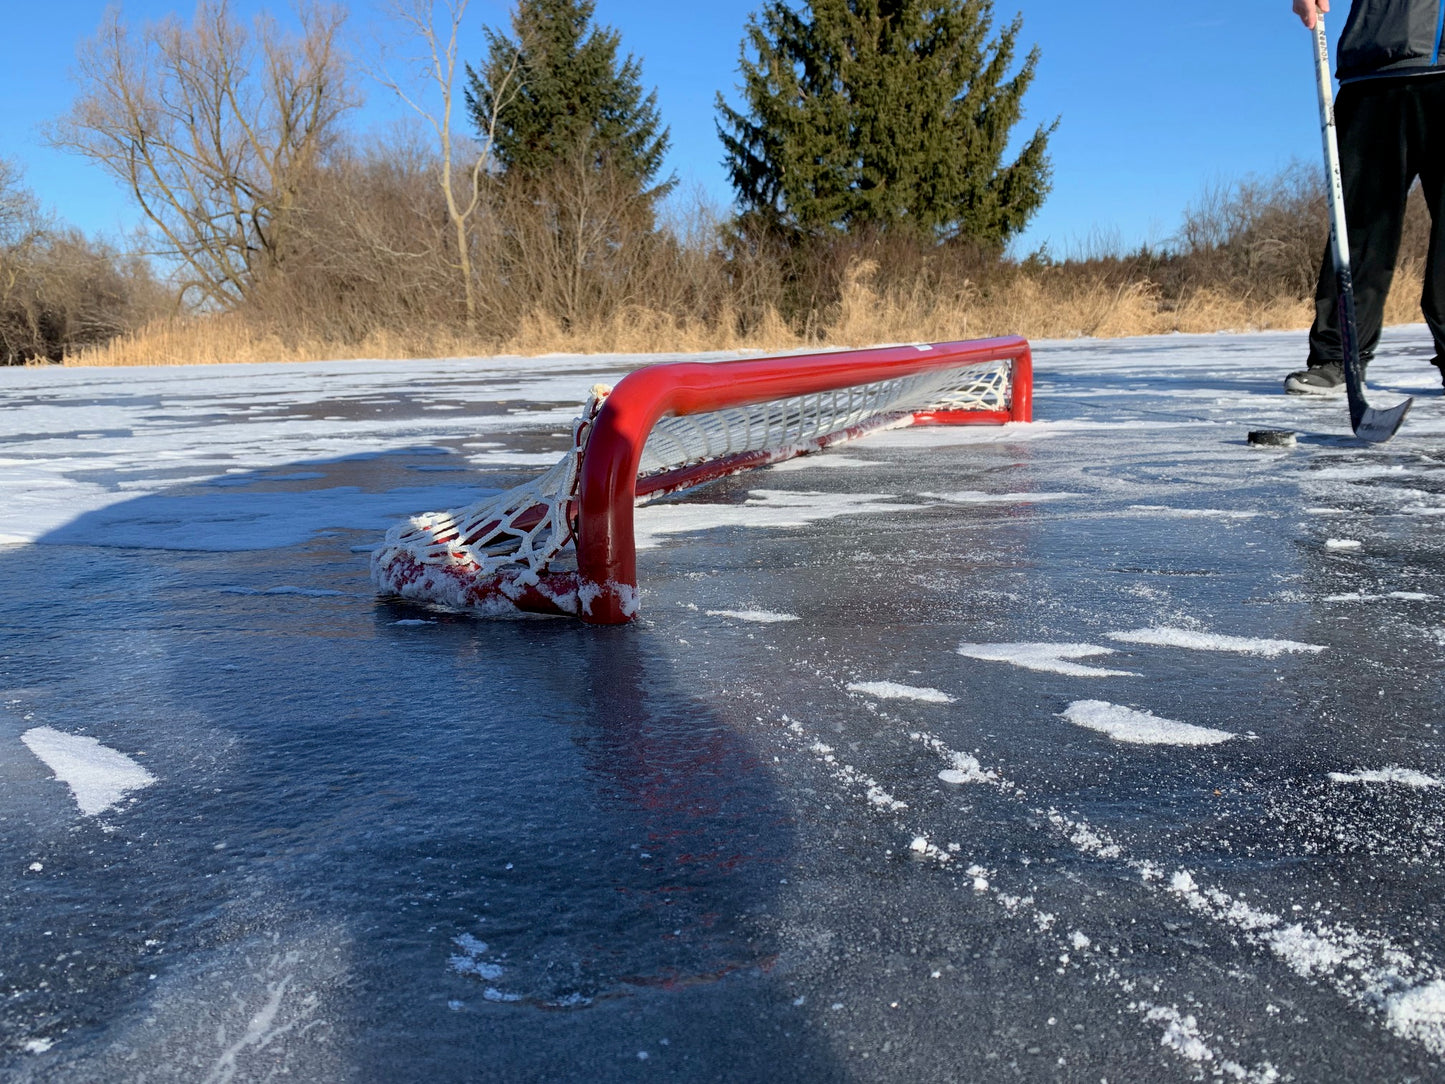 72"  Pond Hockey Net